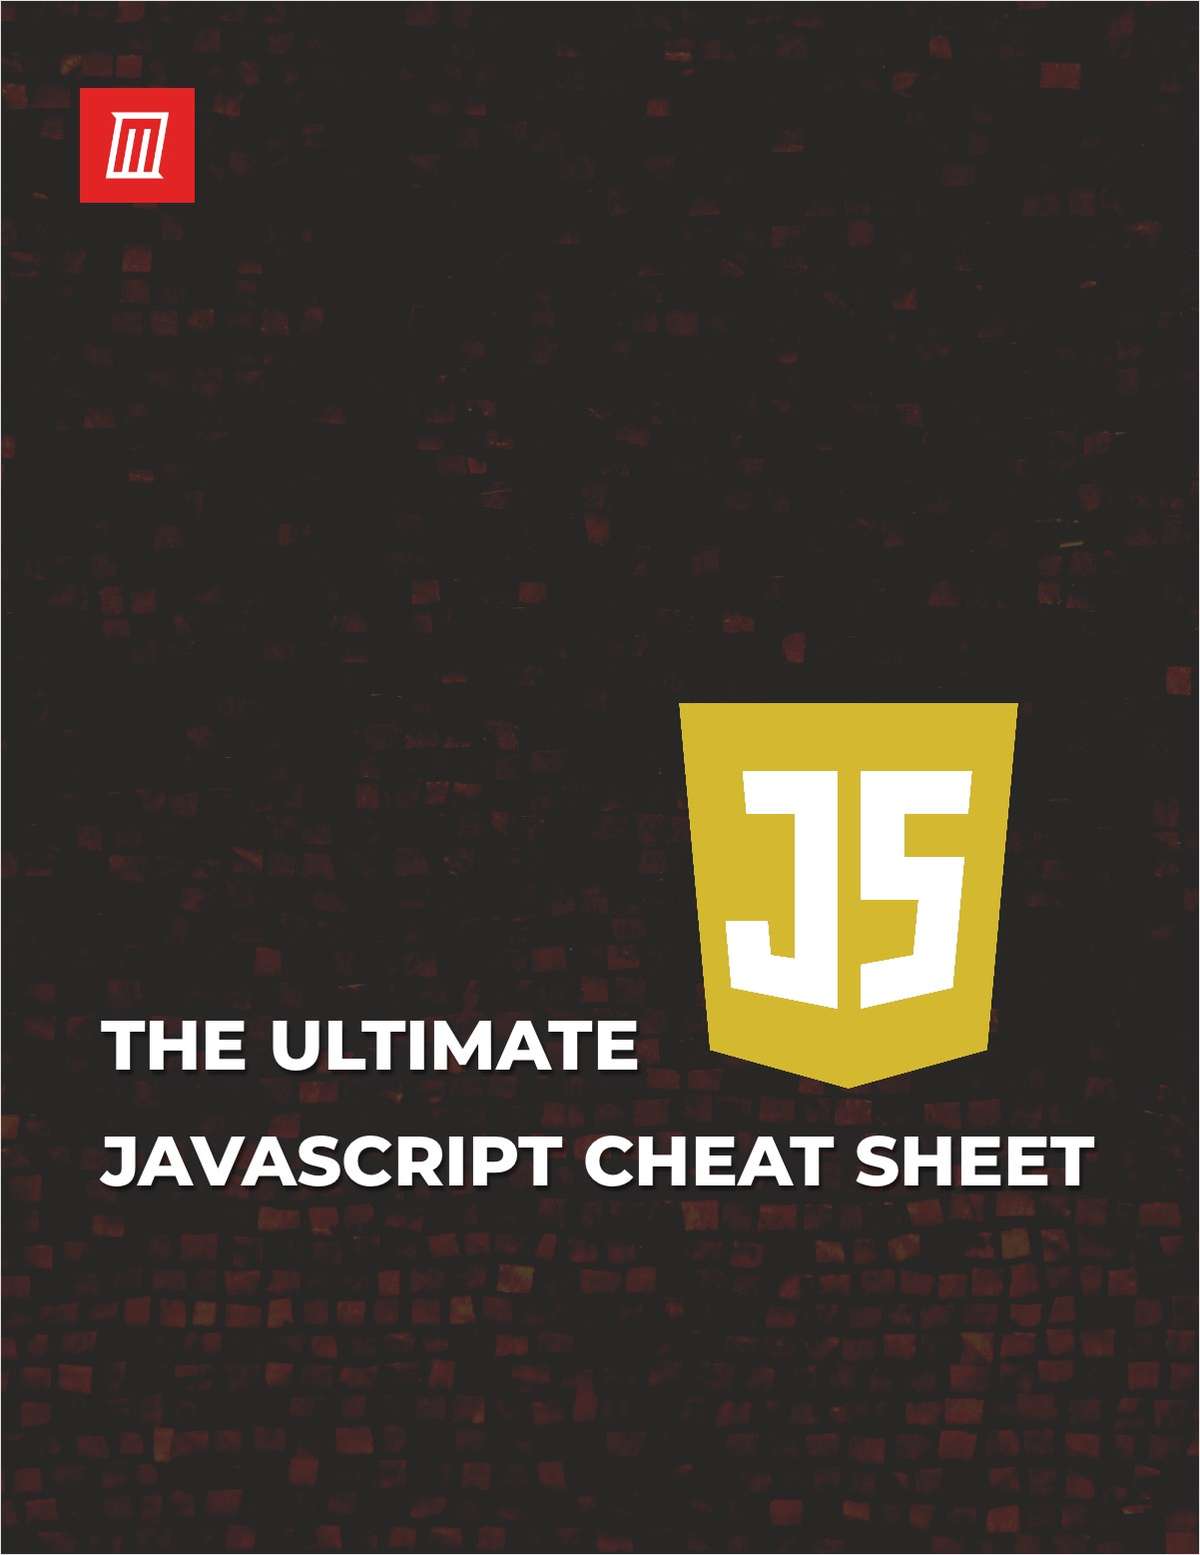 The Ultimate JavaScript Cheat Sheet Free Cheat Sheet